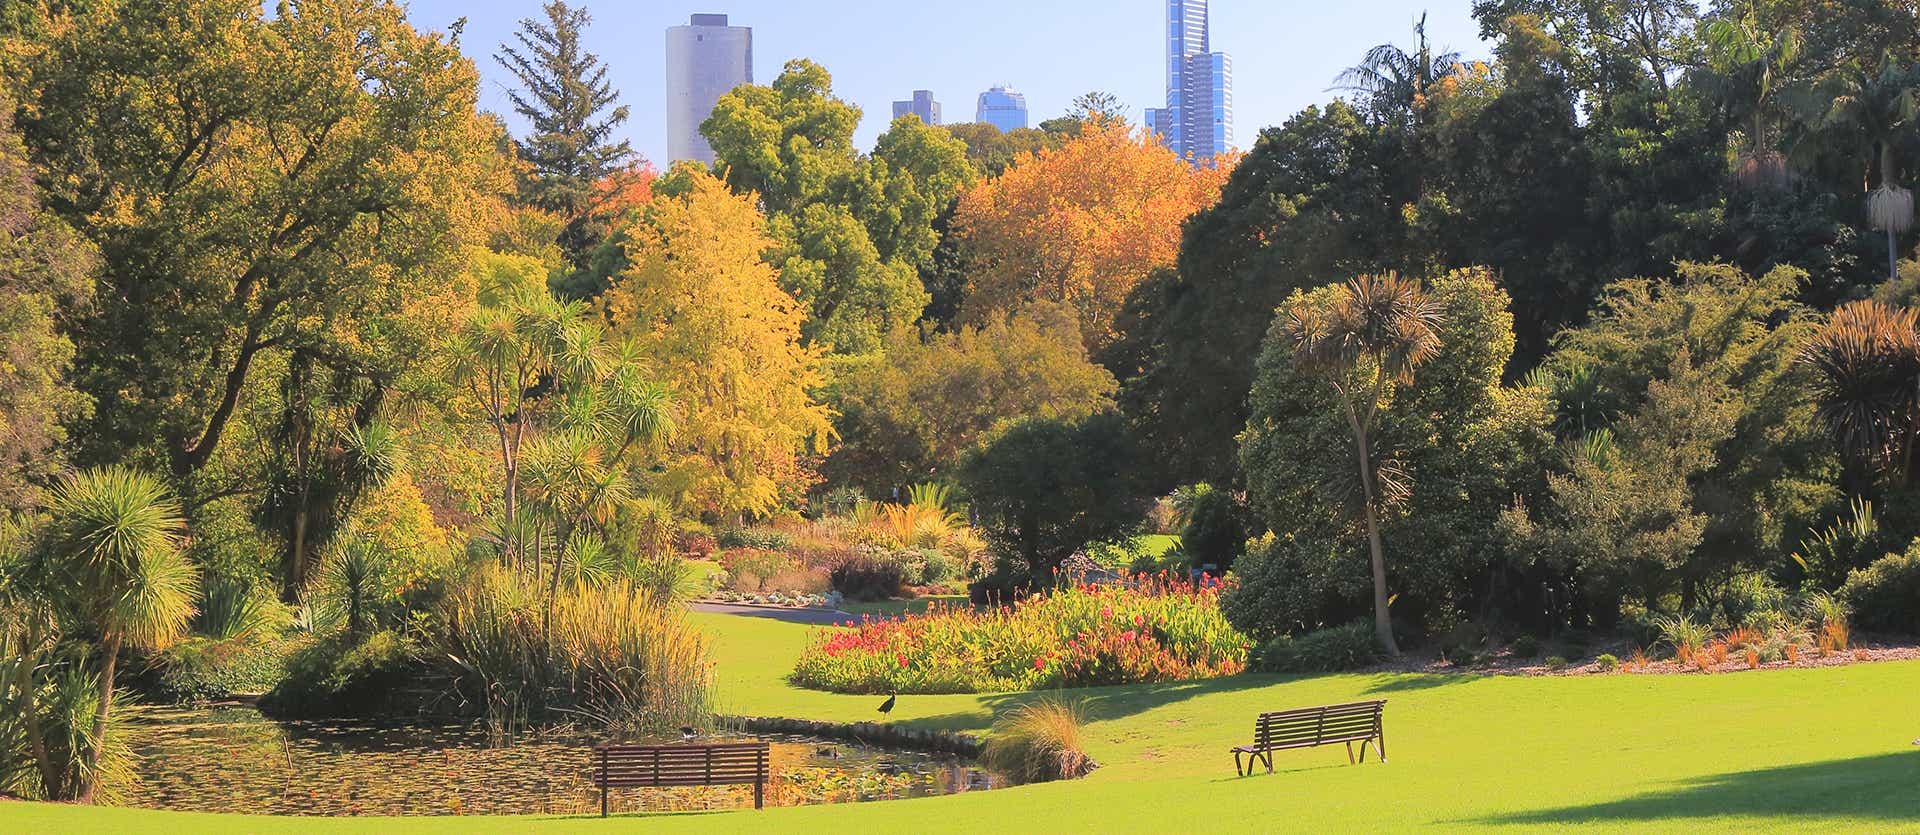 Jardín Botánico <span class="iconos separador"></span> Melbourne